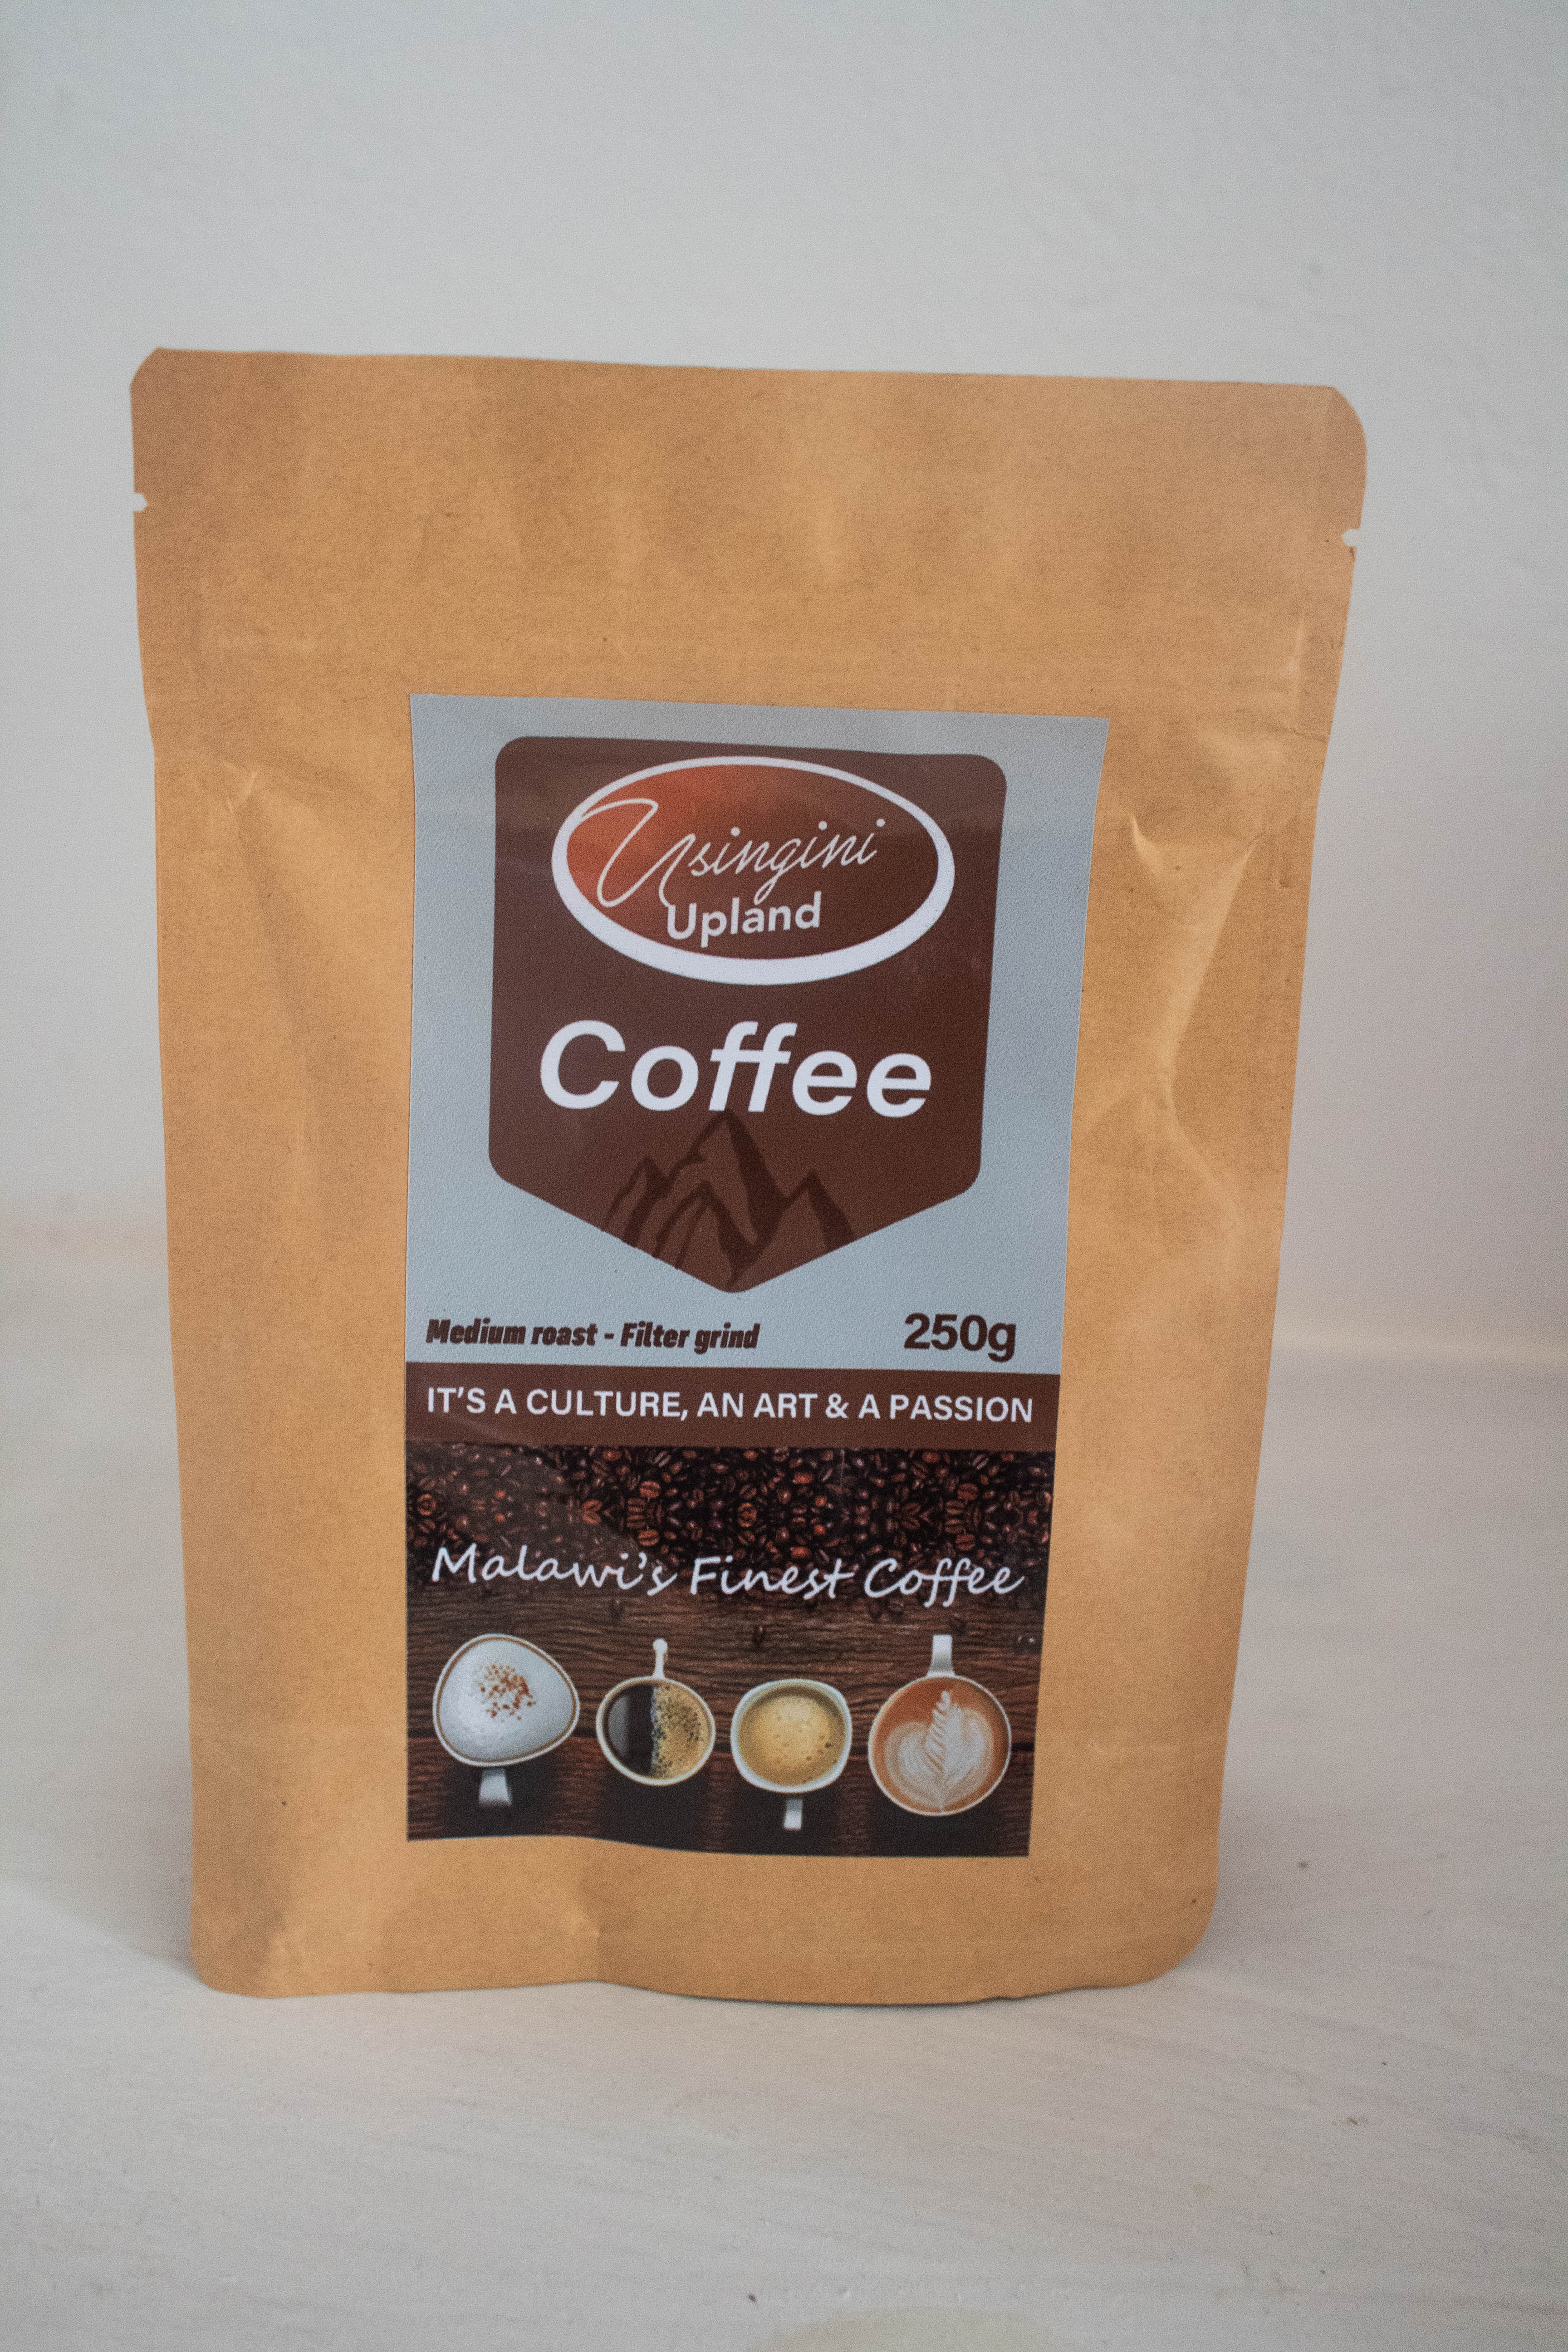 Usingini Upland Coffee (medium Roast-filter Grind)